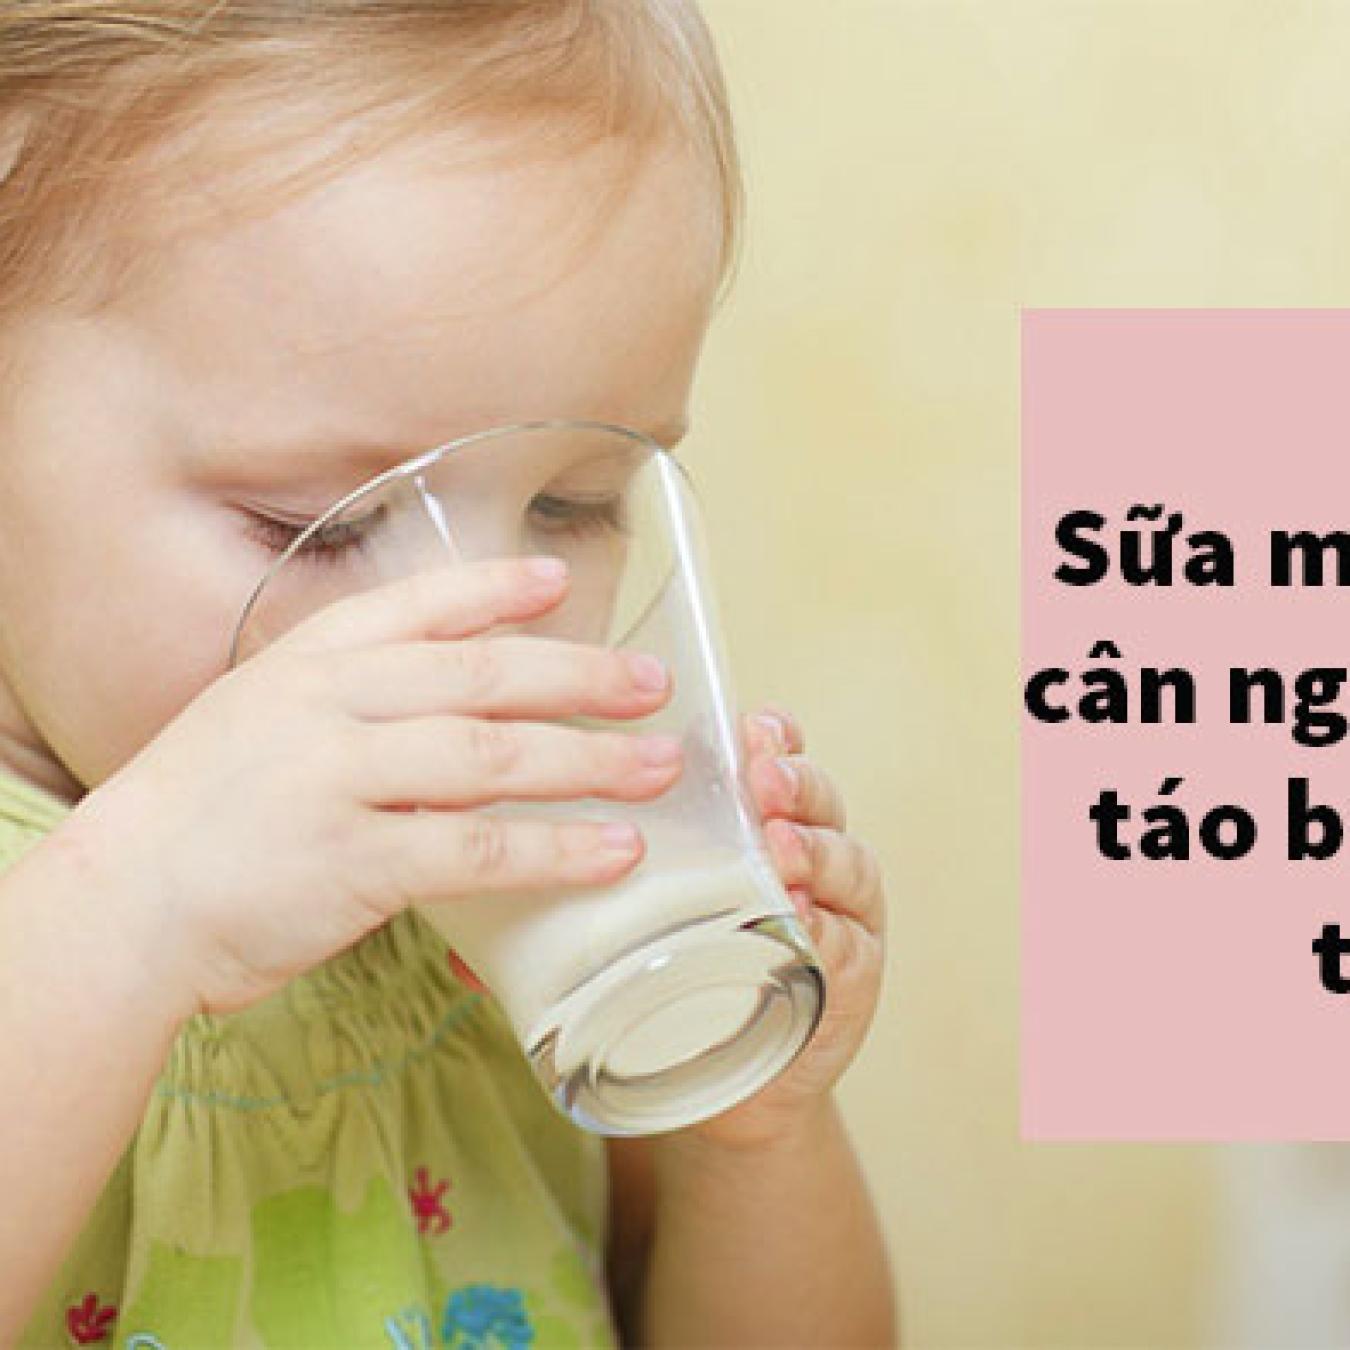 Sữa mát tăng cân, tiêu hóa tốt ngăn ngừa táo bón cho trẻ